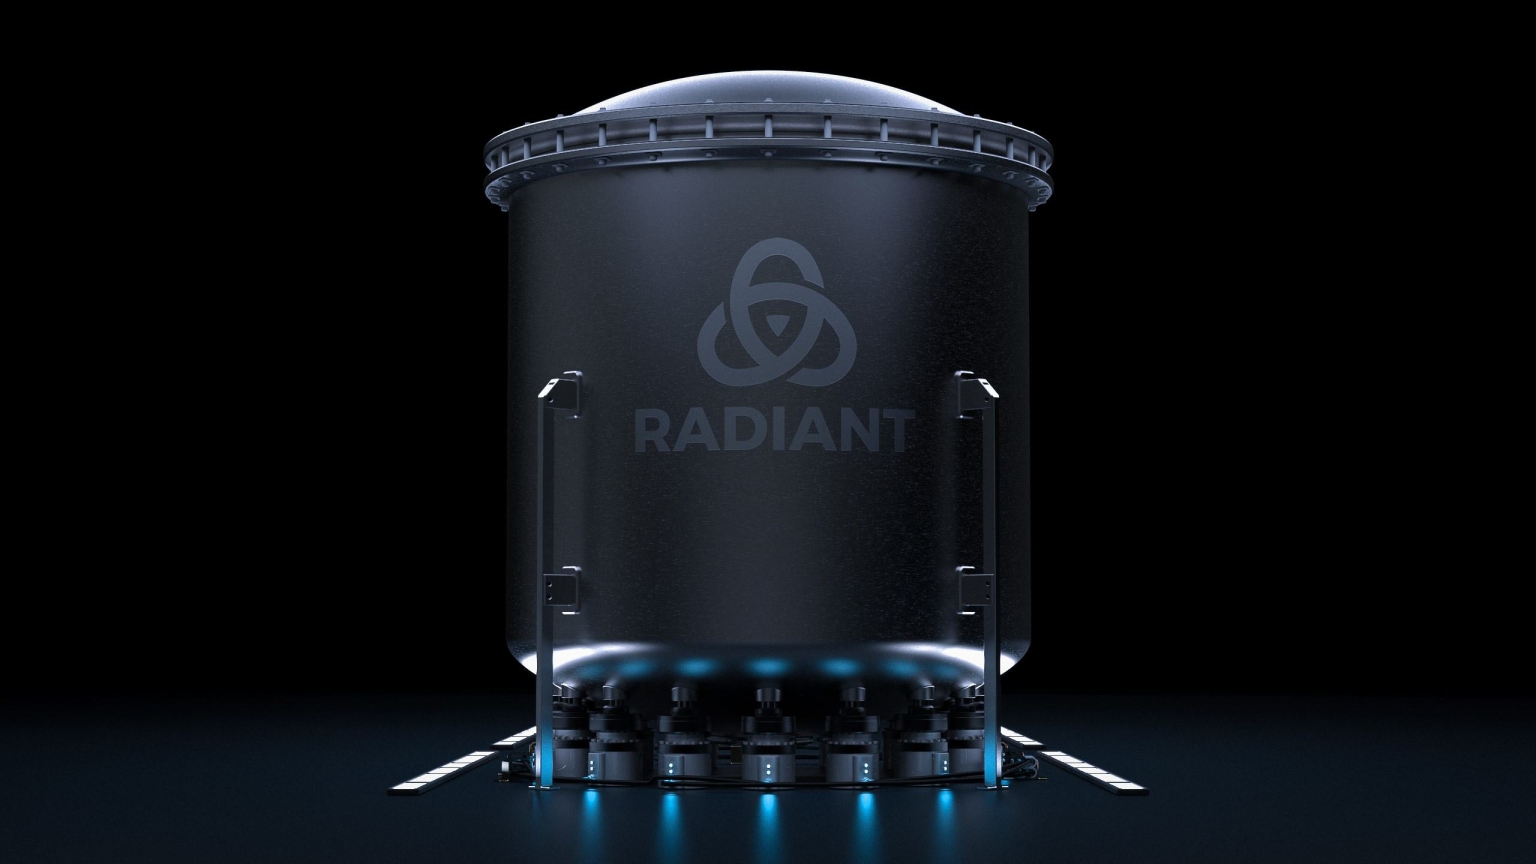 Radiant développe la première source d'électricité pauvre en émission portative qui pourra être utilisée partout.